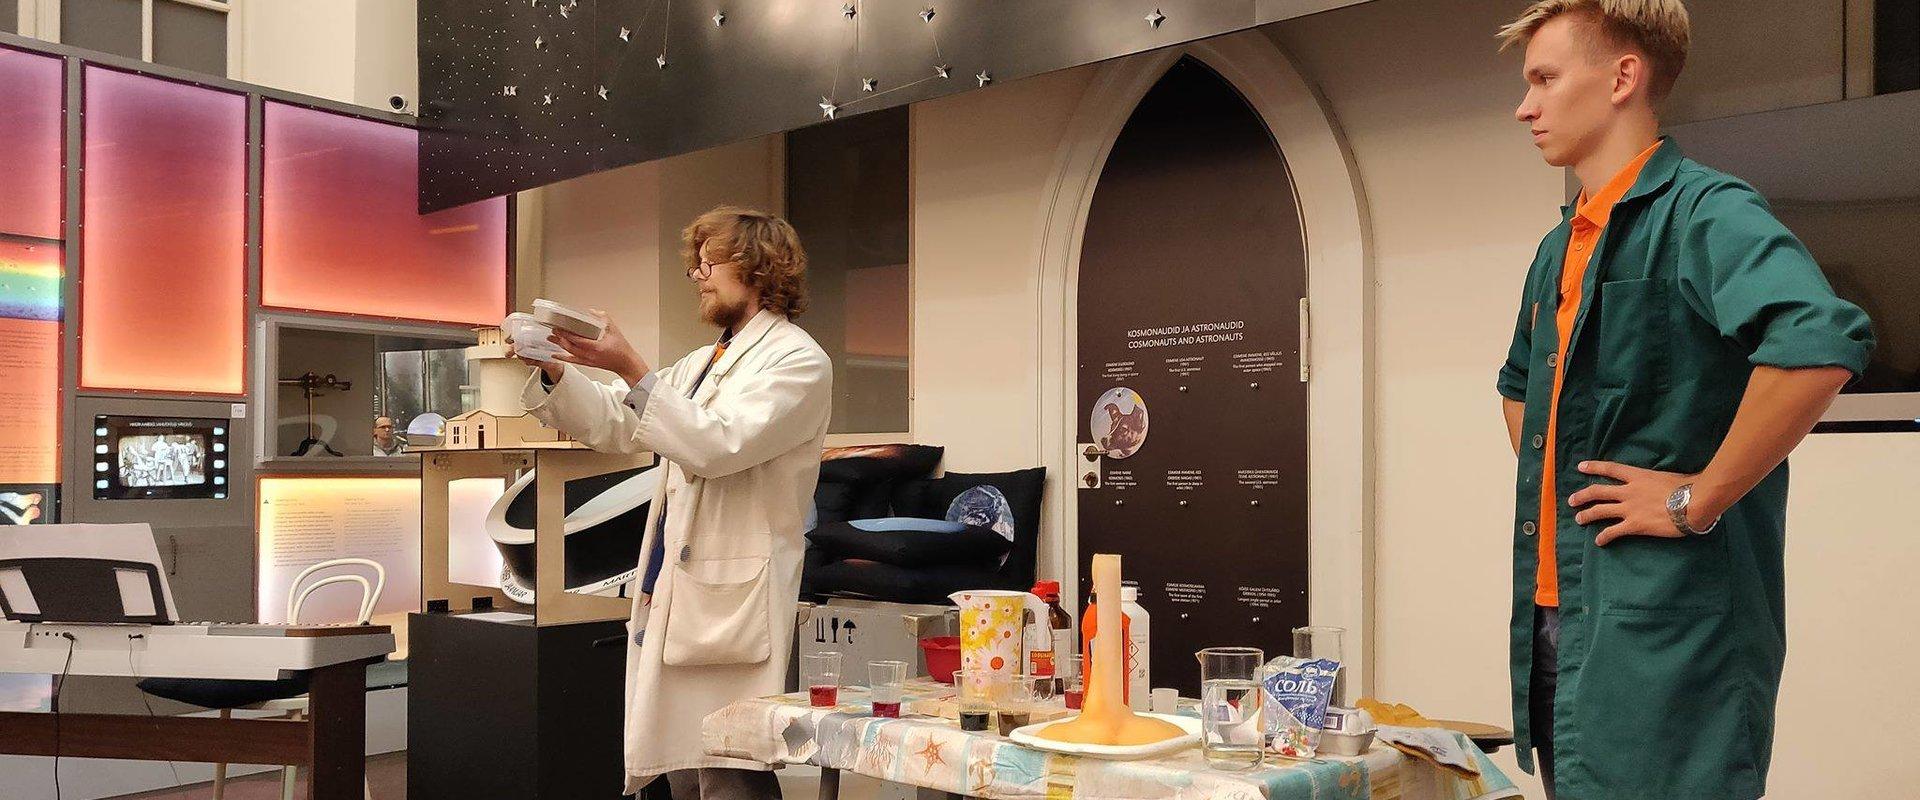 Tartu observatorija un Trakais Zinātnieks vada aizraujošus zinātniskus eksperimentus bērniem